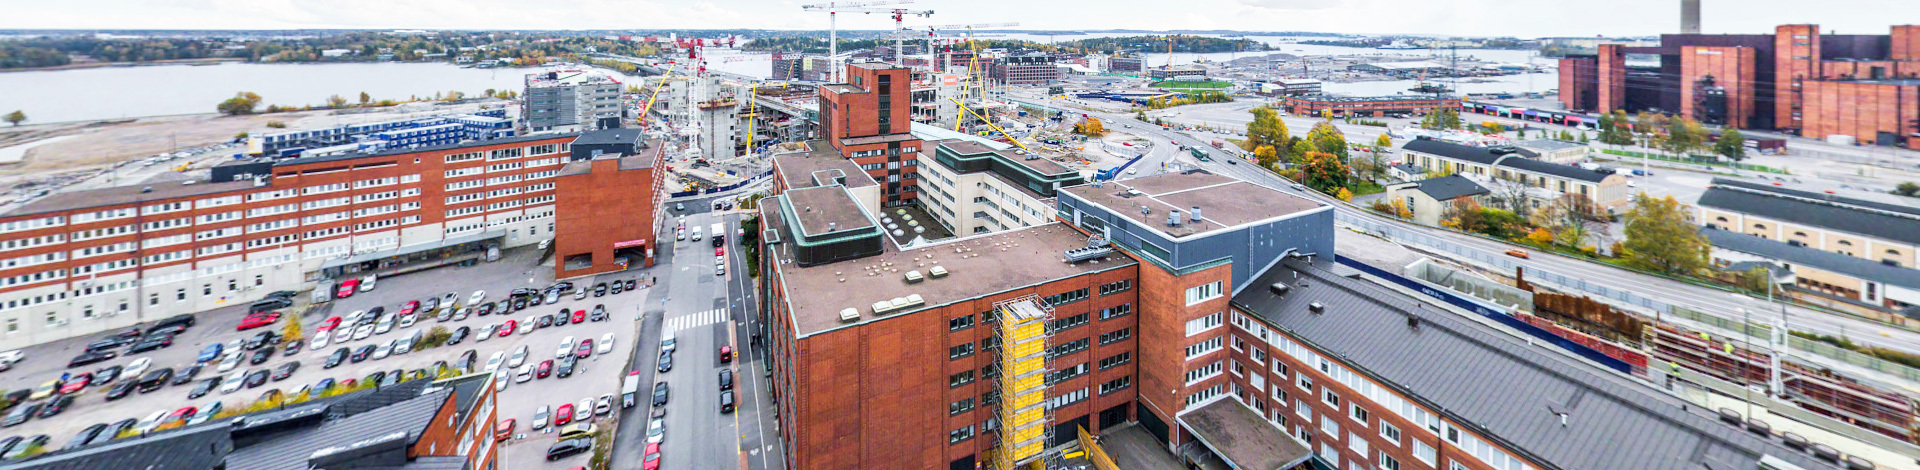 View of Kalasatama, Helsinki